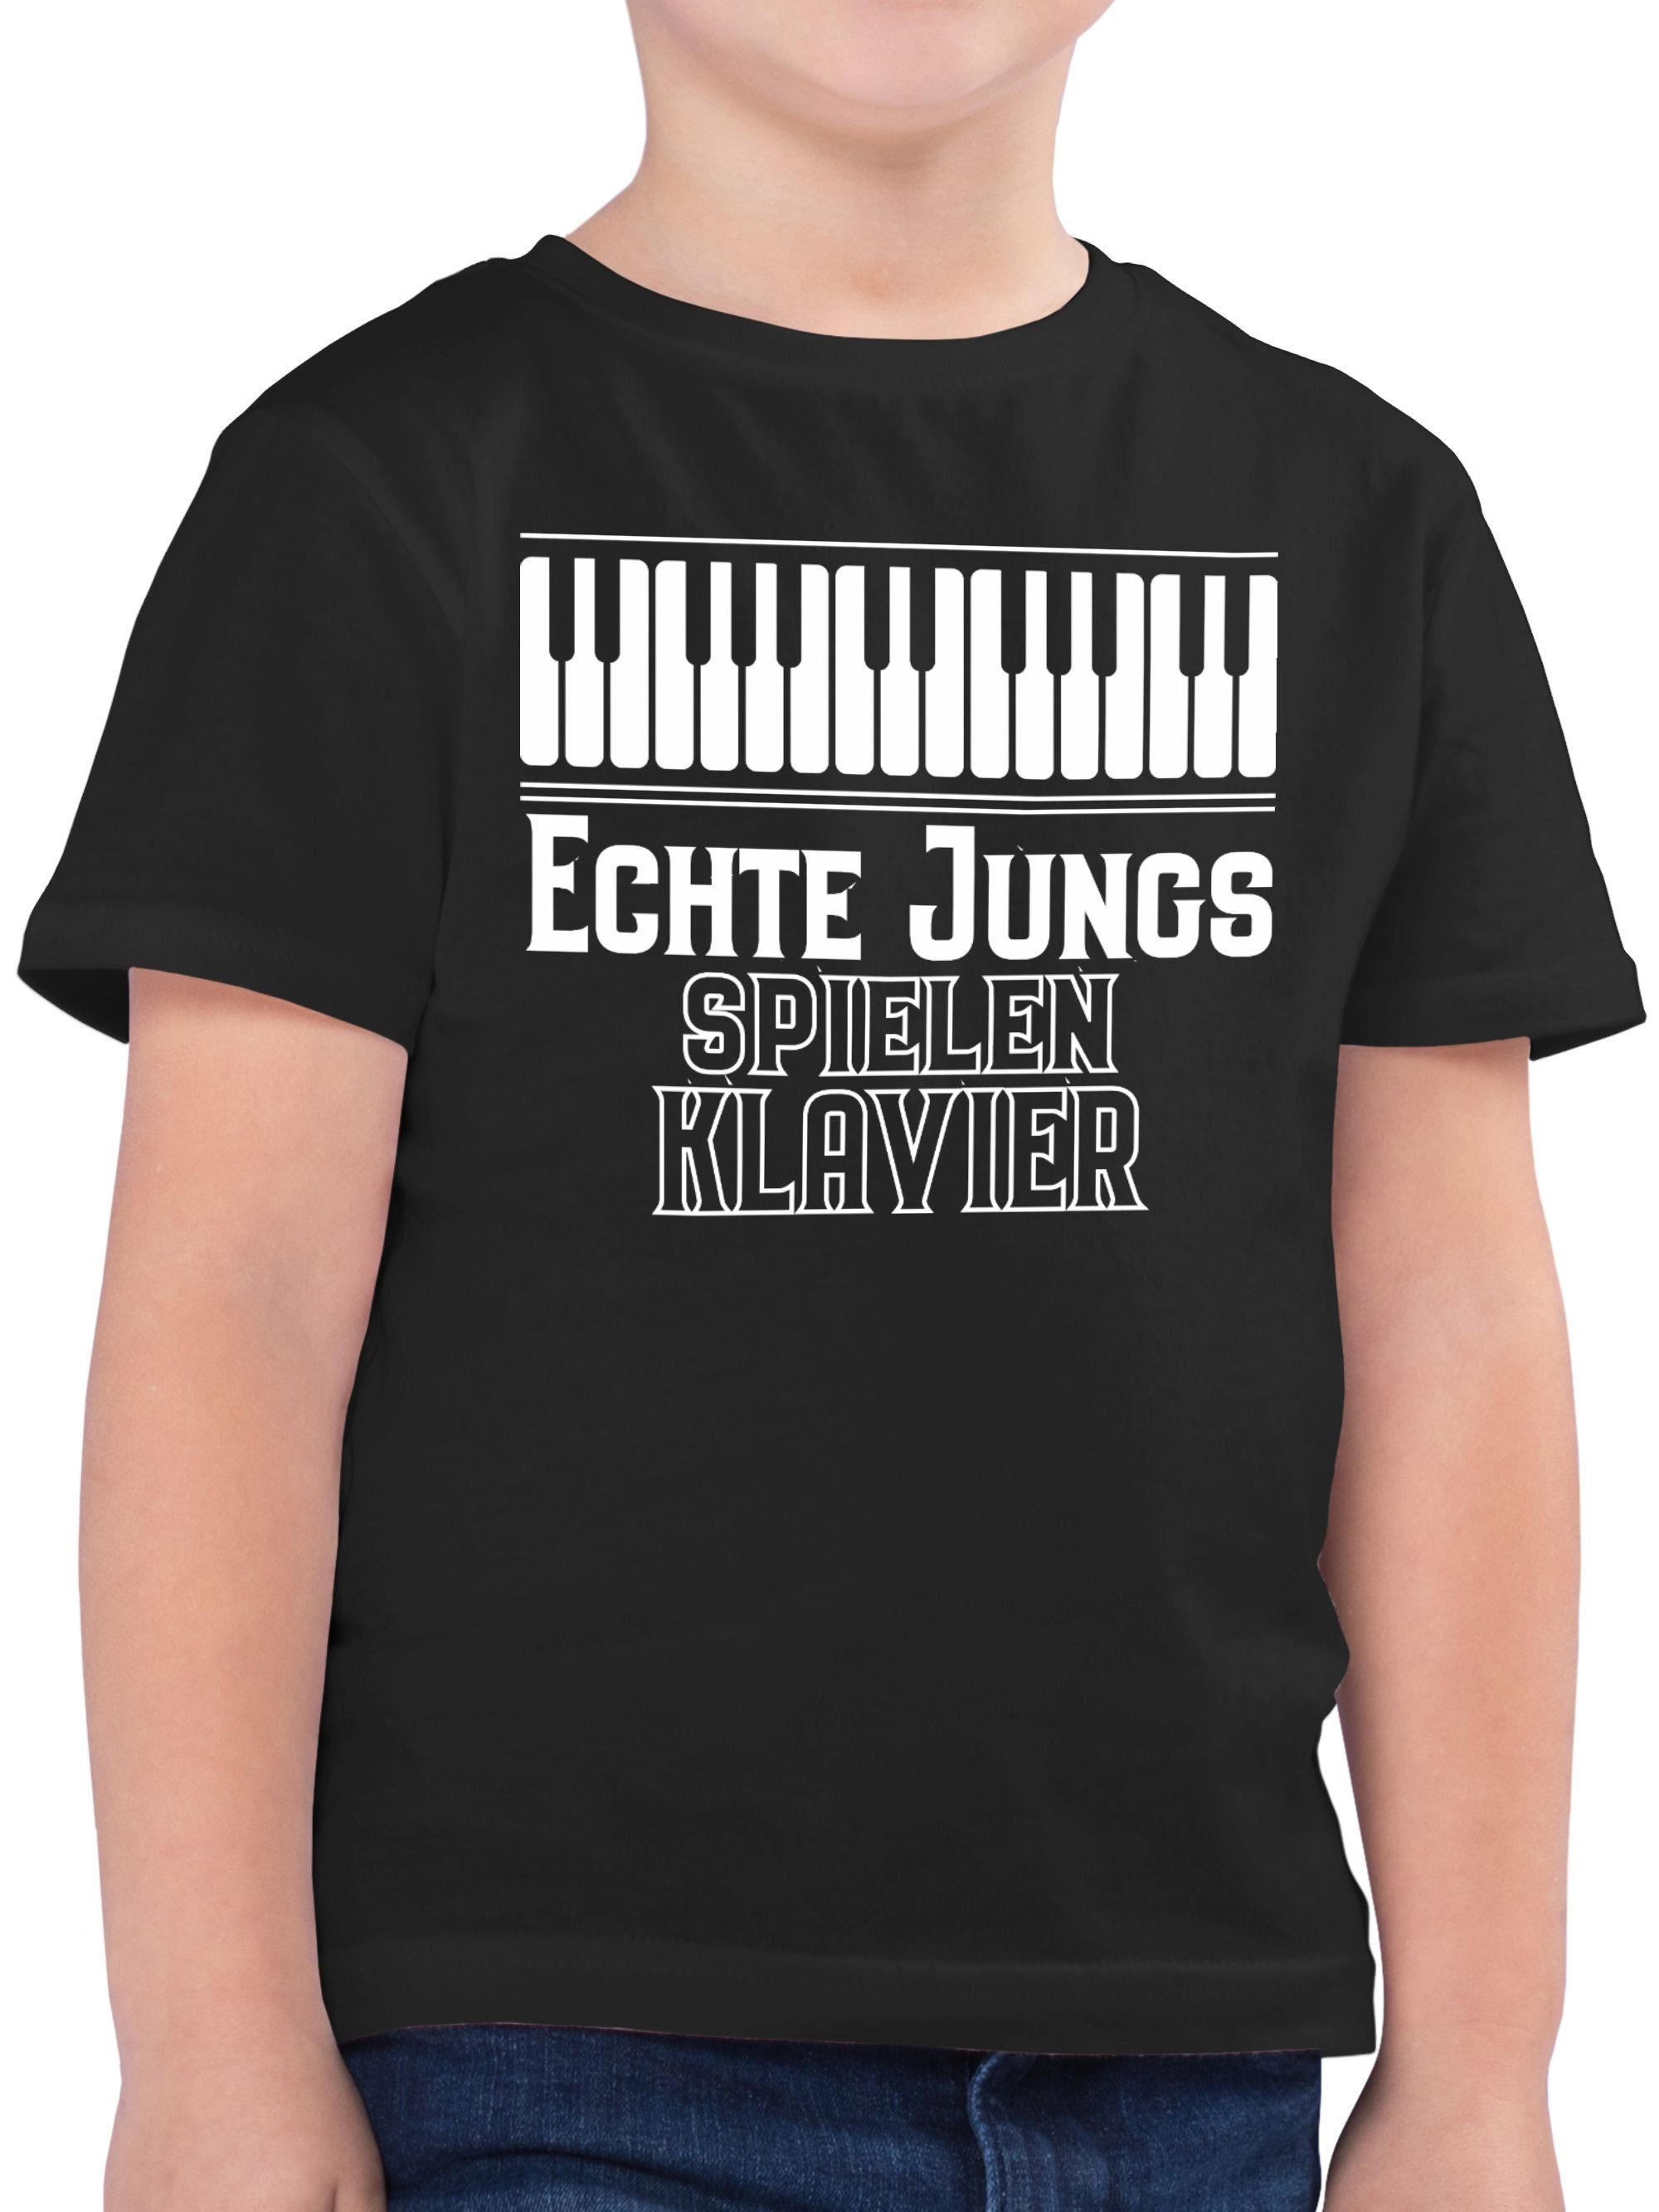 Schwarz T-Shirt Jungs spielen 2 Kinder Statement Sprüche Klavier Echte Shirtracer